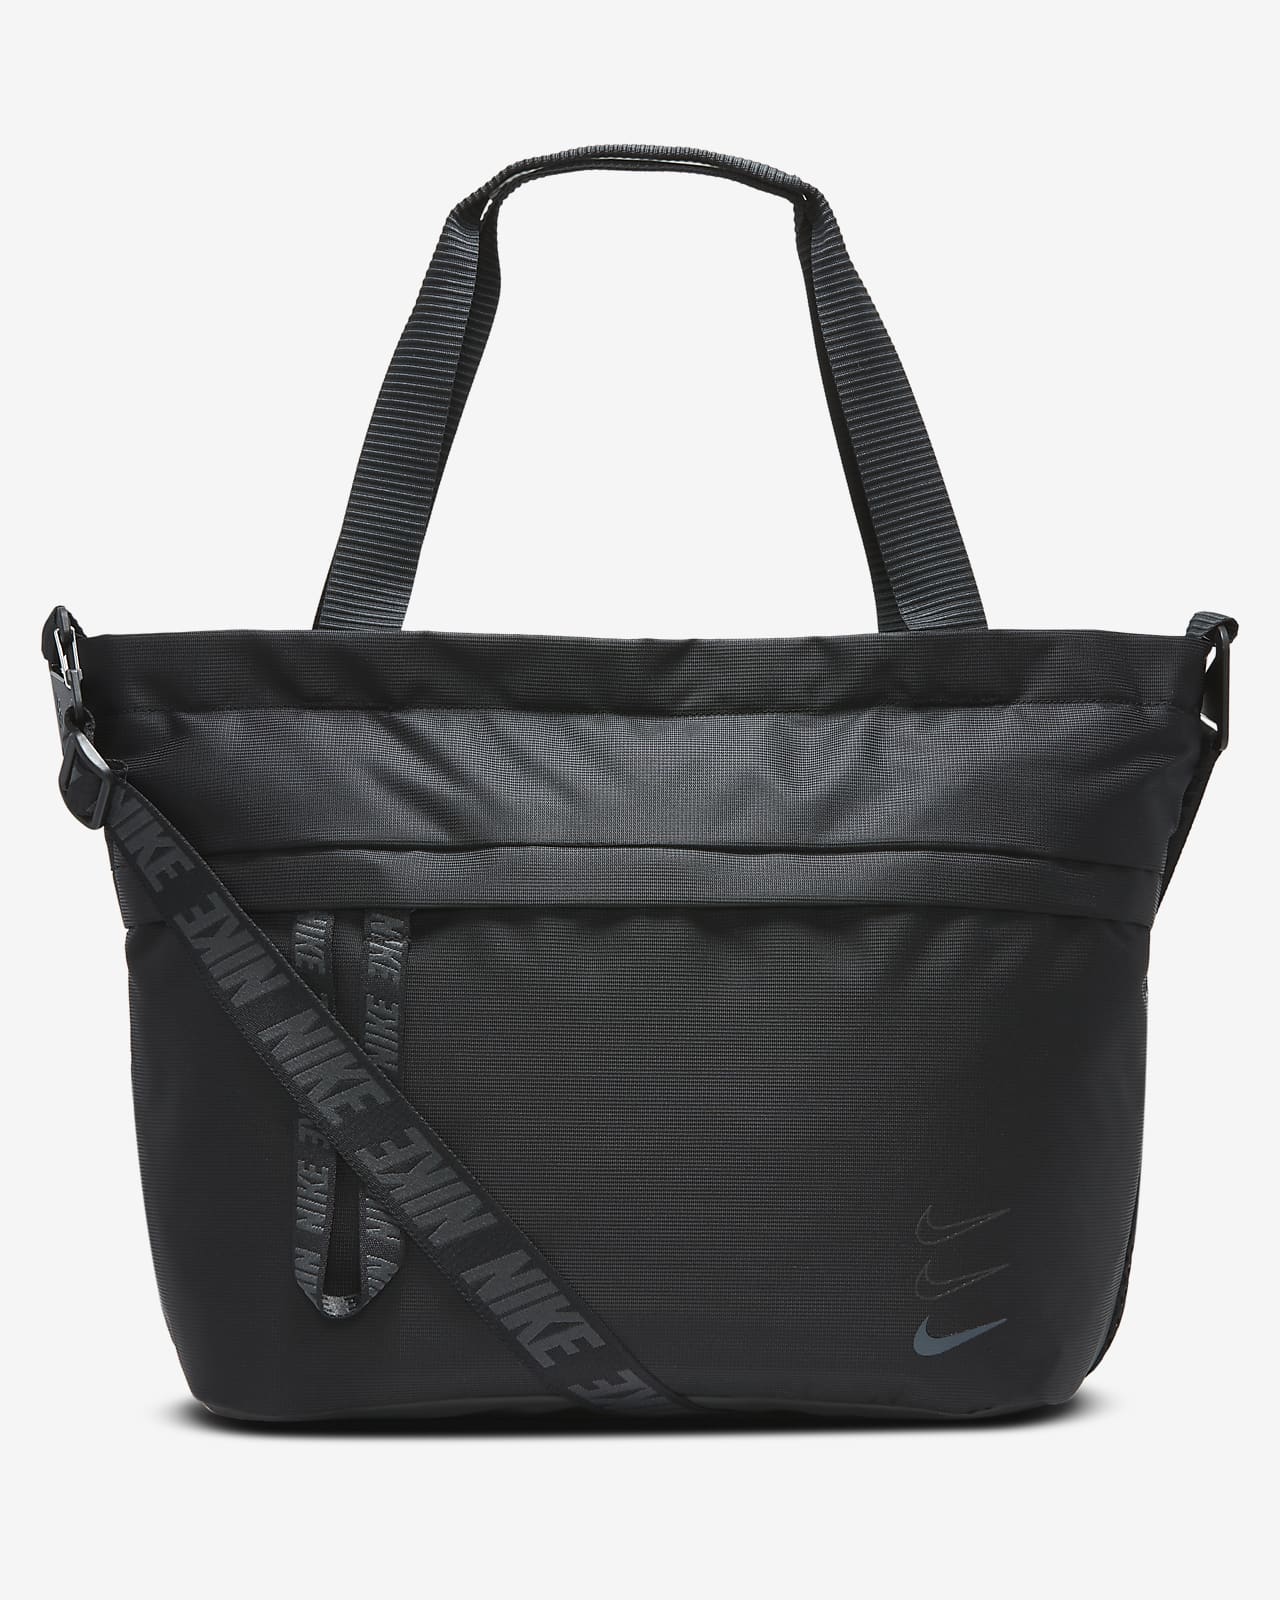 nike essentials black shoulder bag